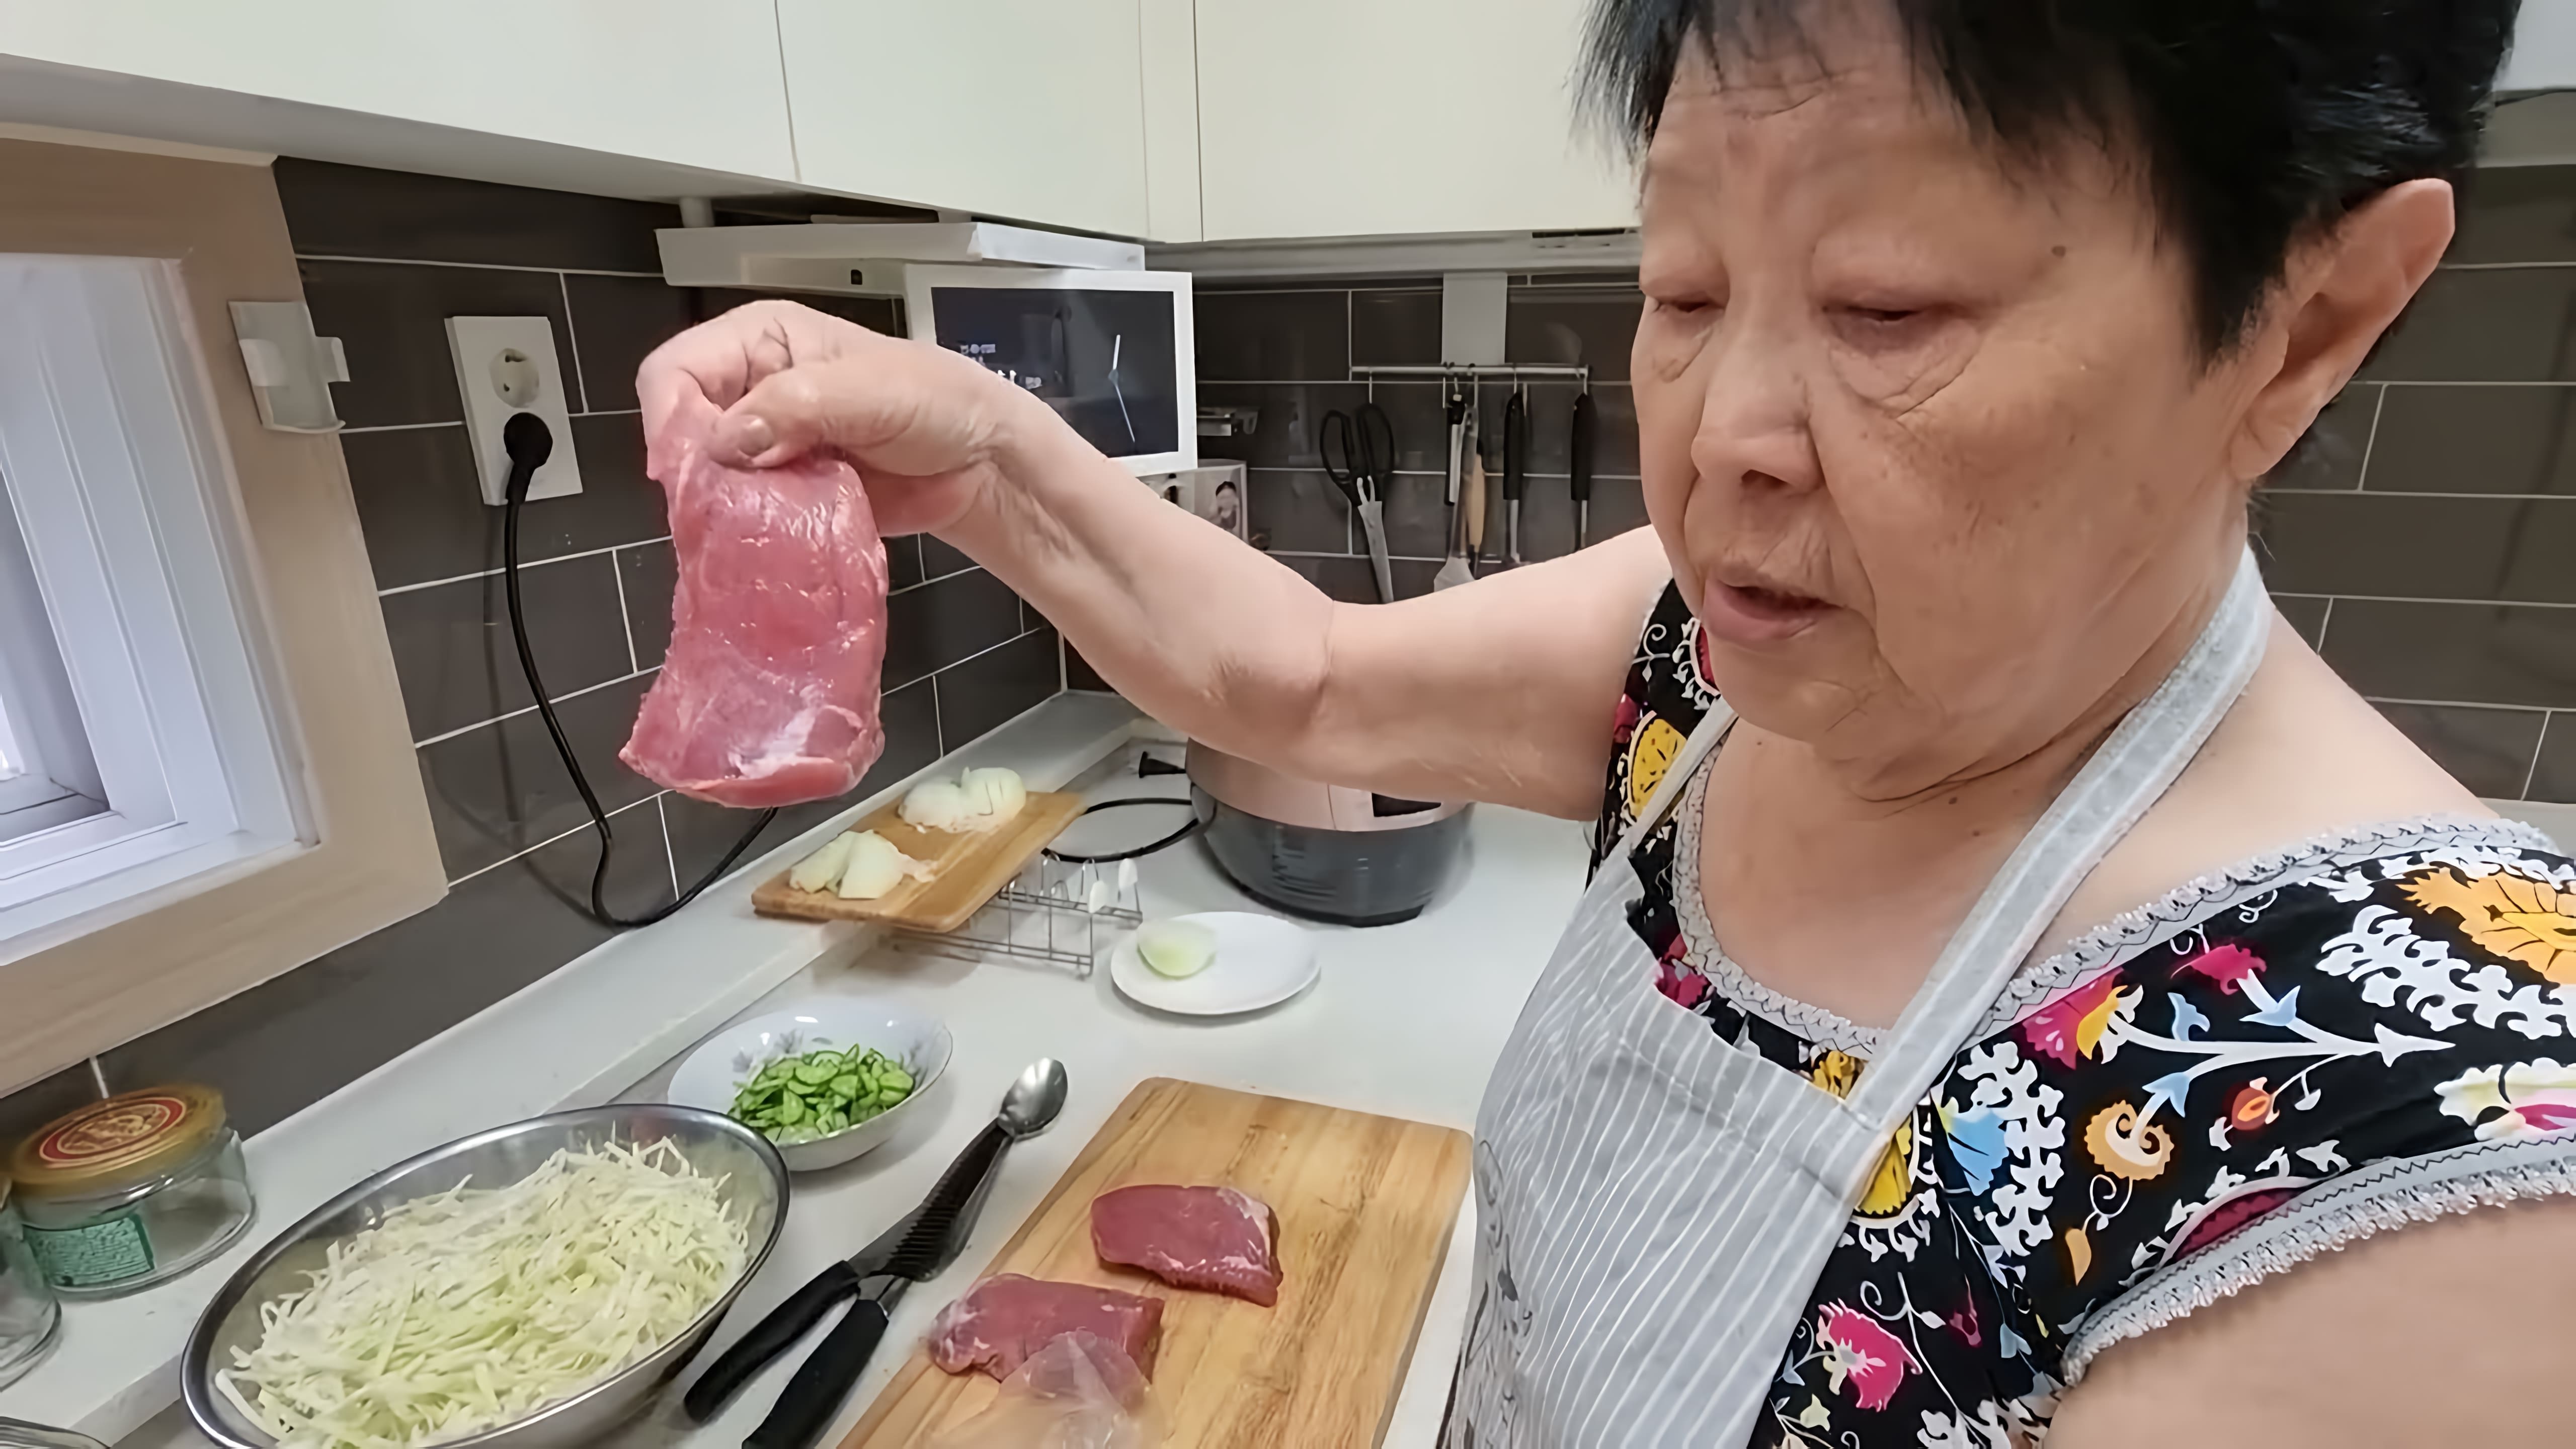 В этом видео показано, как приготовить кукси - традиционное корейское блюдо из лапши